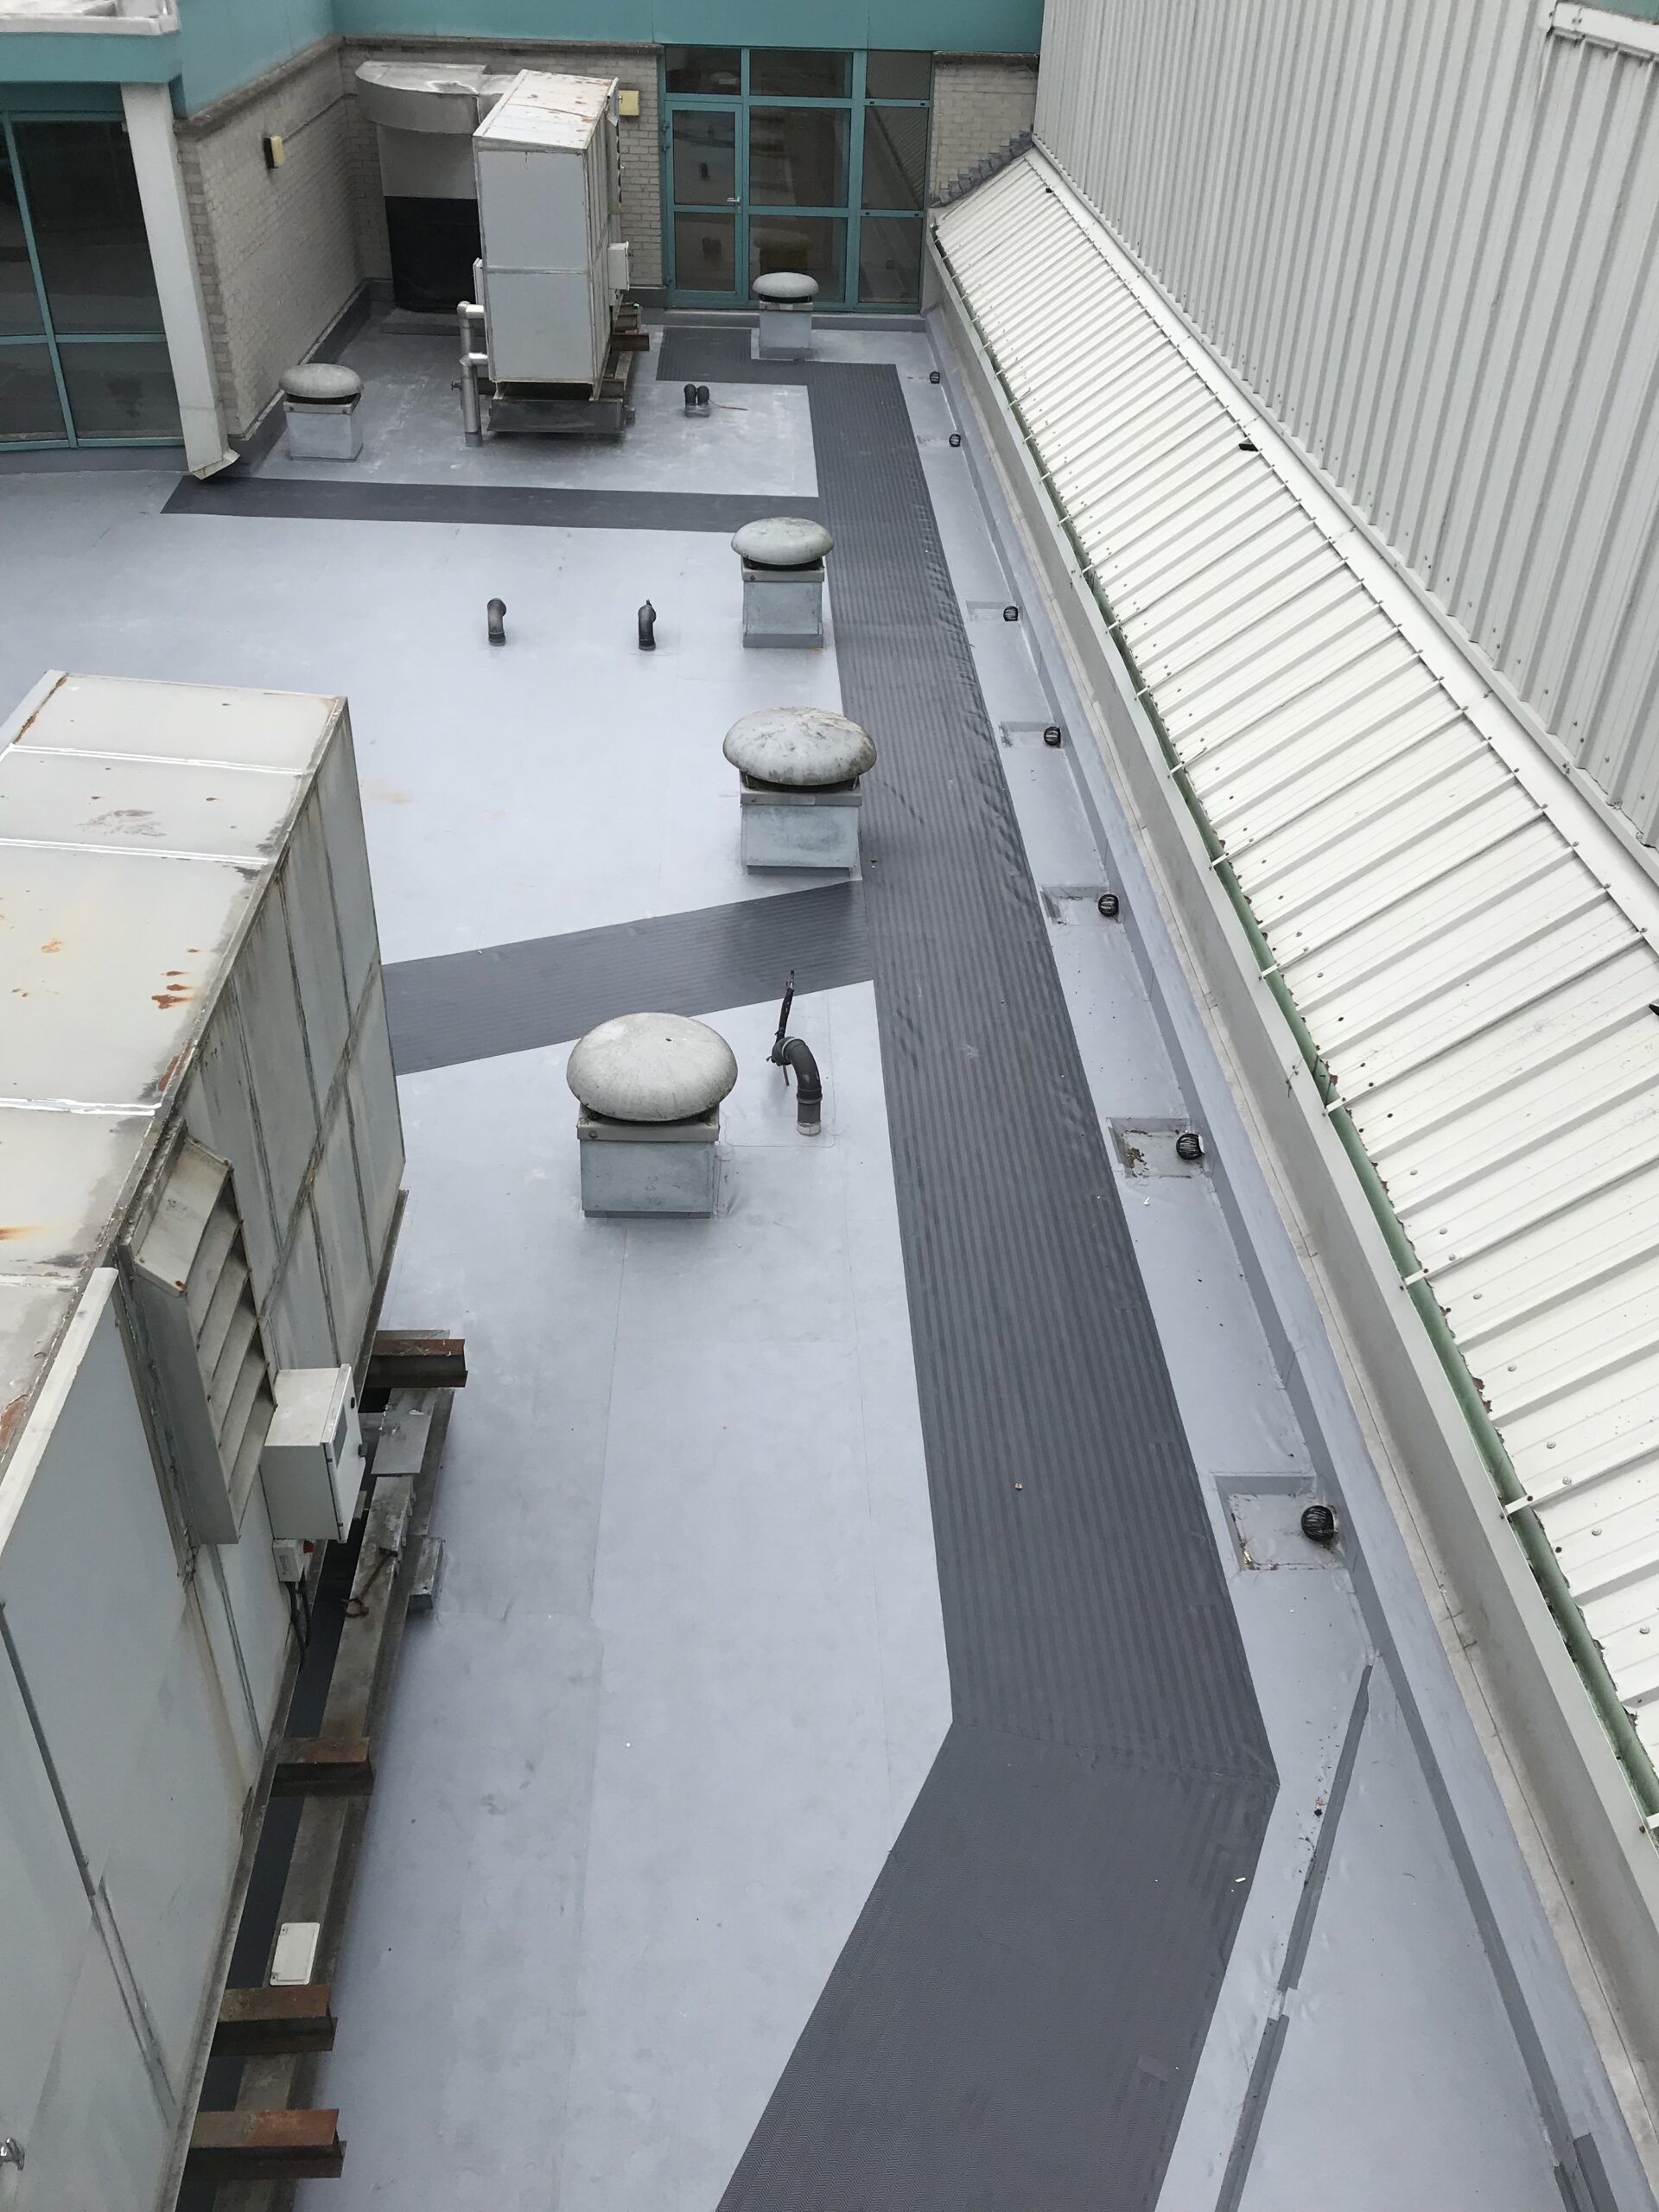 Roof repairs & Maintenance - flat roof repair